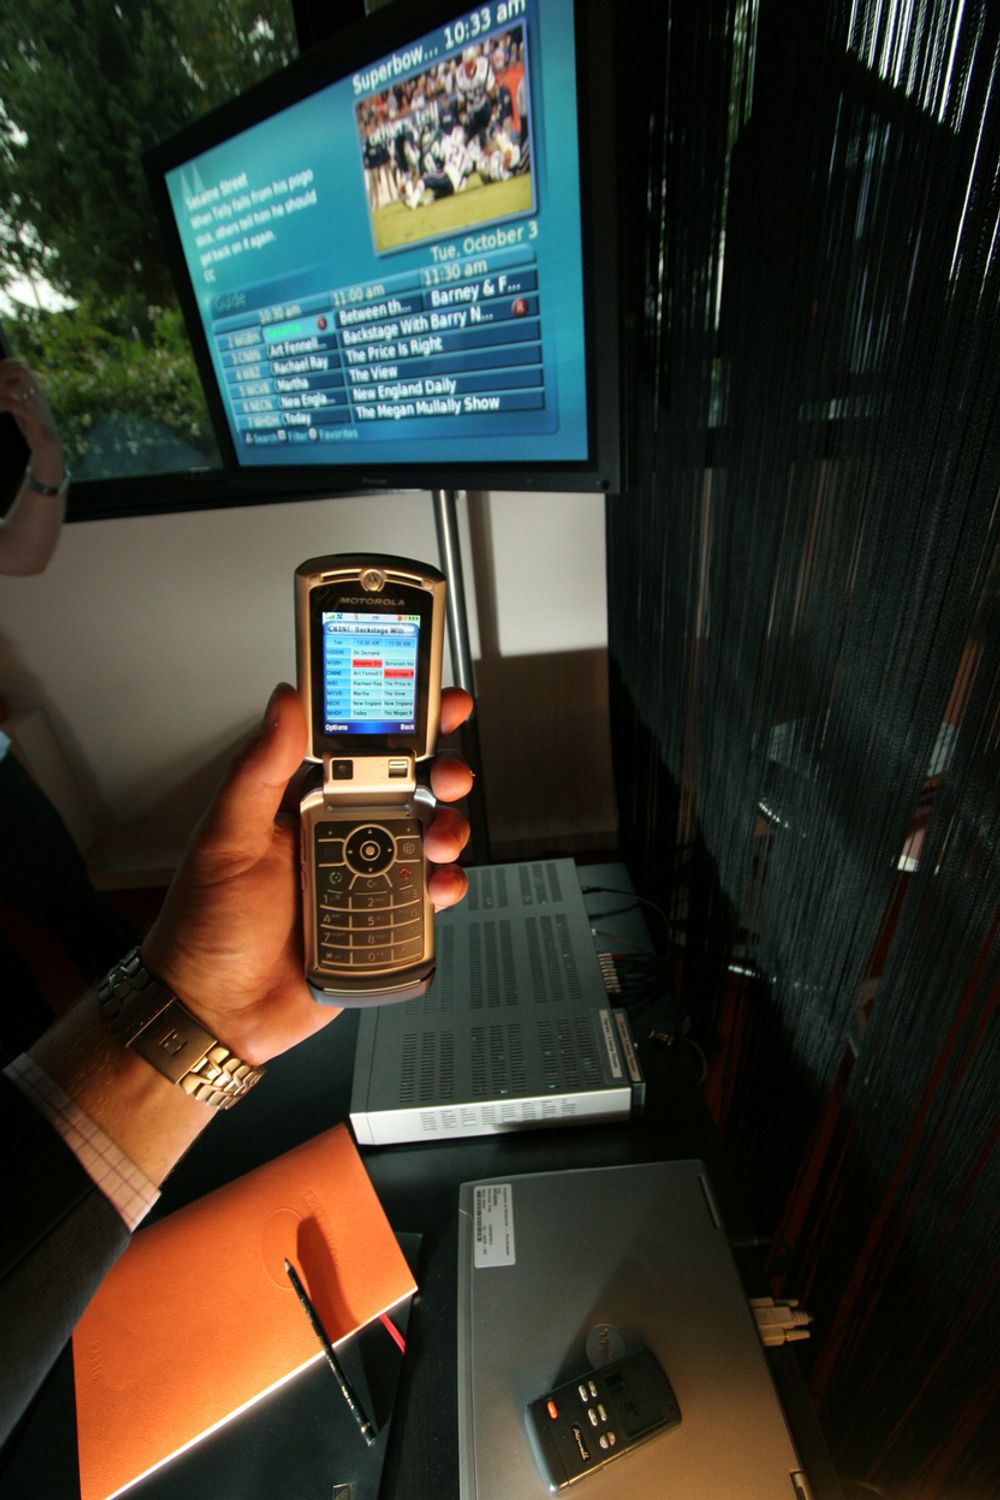 BLIR FJERNKONTROLL: 3G-mobilen din vil snart bli fjernkontroll for TV-en. Bestem hva du vil se på mobilen, send det over til TV-en, og den viser programmene du har forhåndsbestemt etter dine interessefelt og hobbyer. Motorola regner med at dette vil bli kommersialisert allerede neste år.